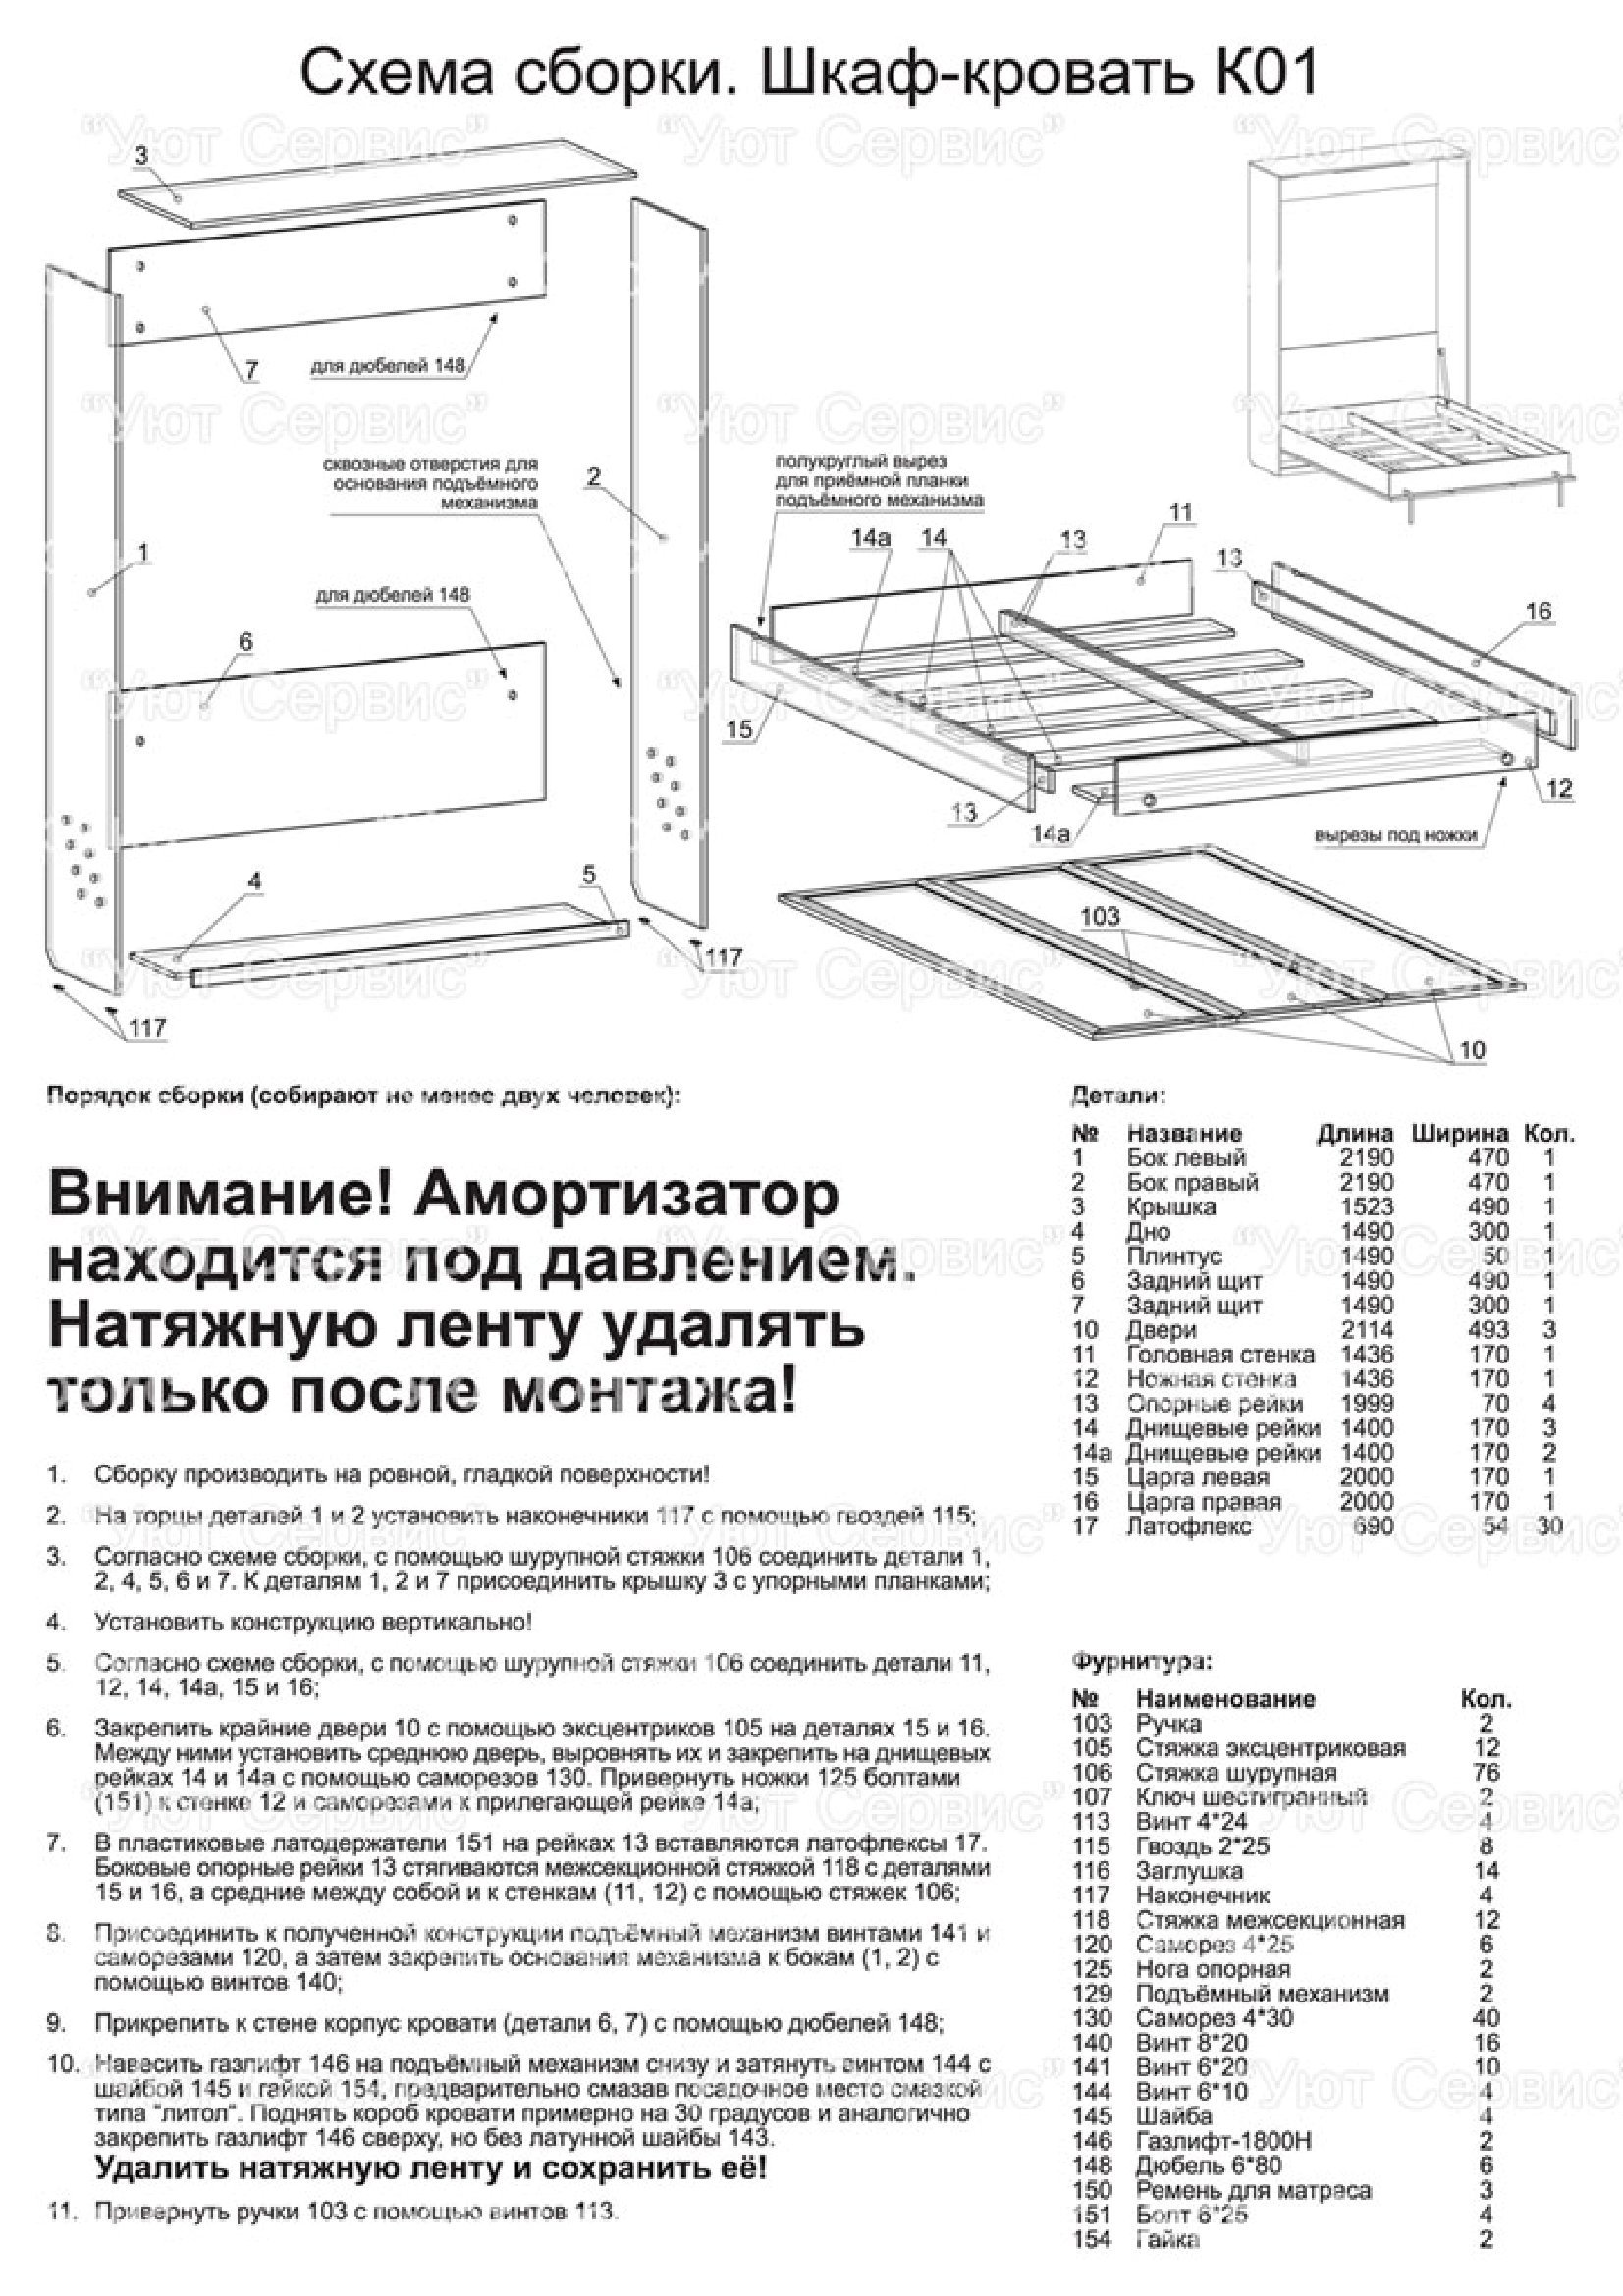 Механизм 582 шкаф-кровати с опор ногами с газлифтом чертежи